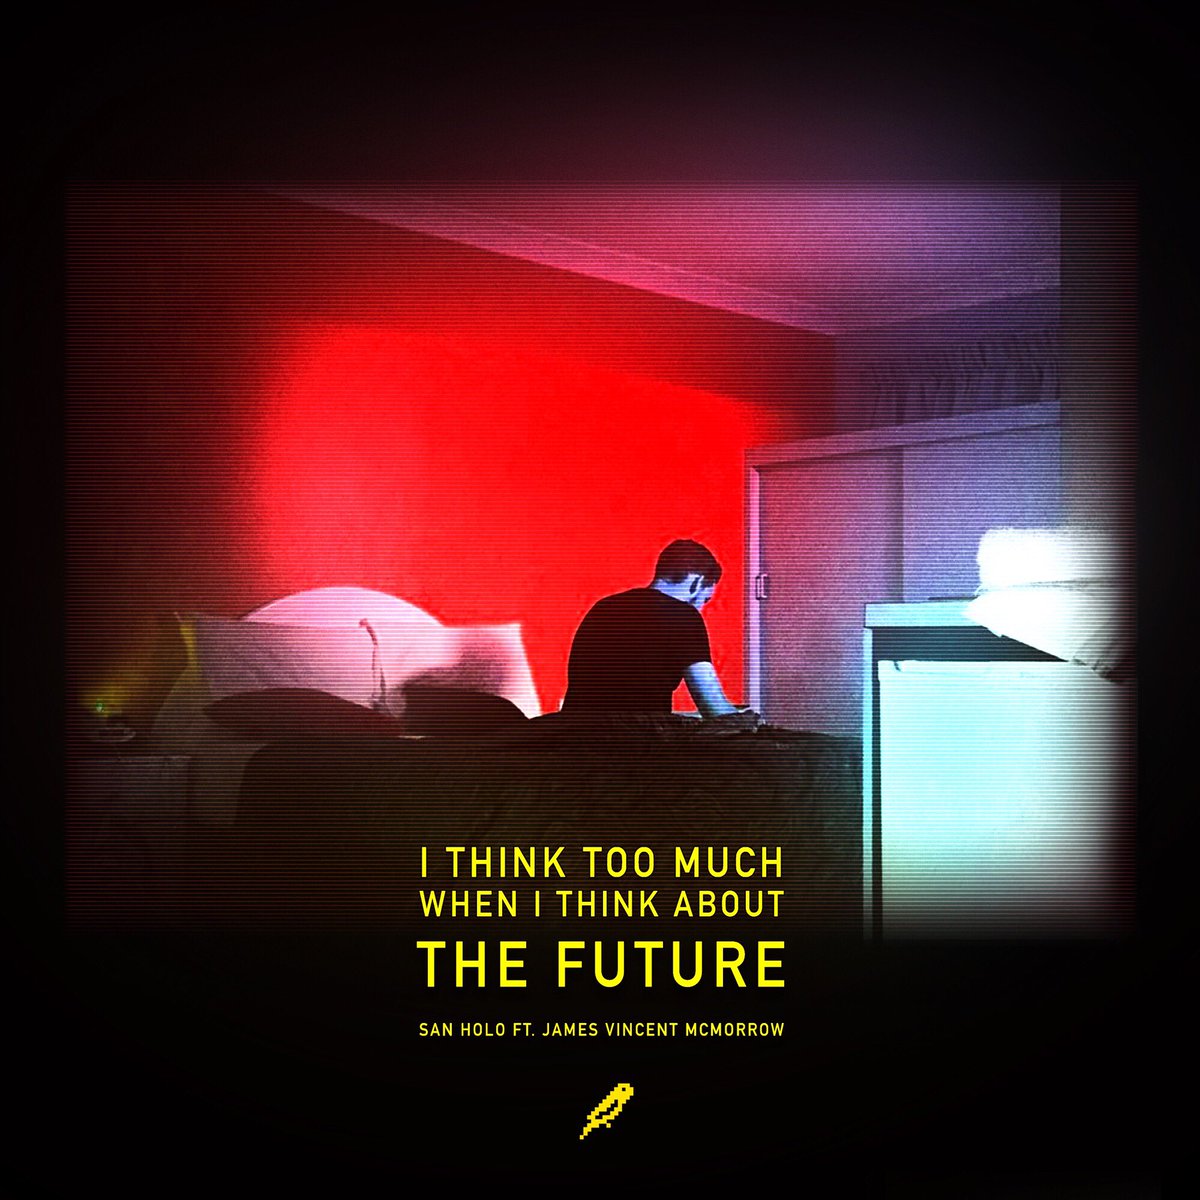 The Future - San Holo